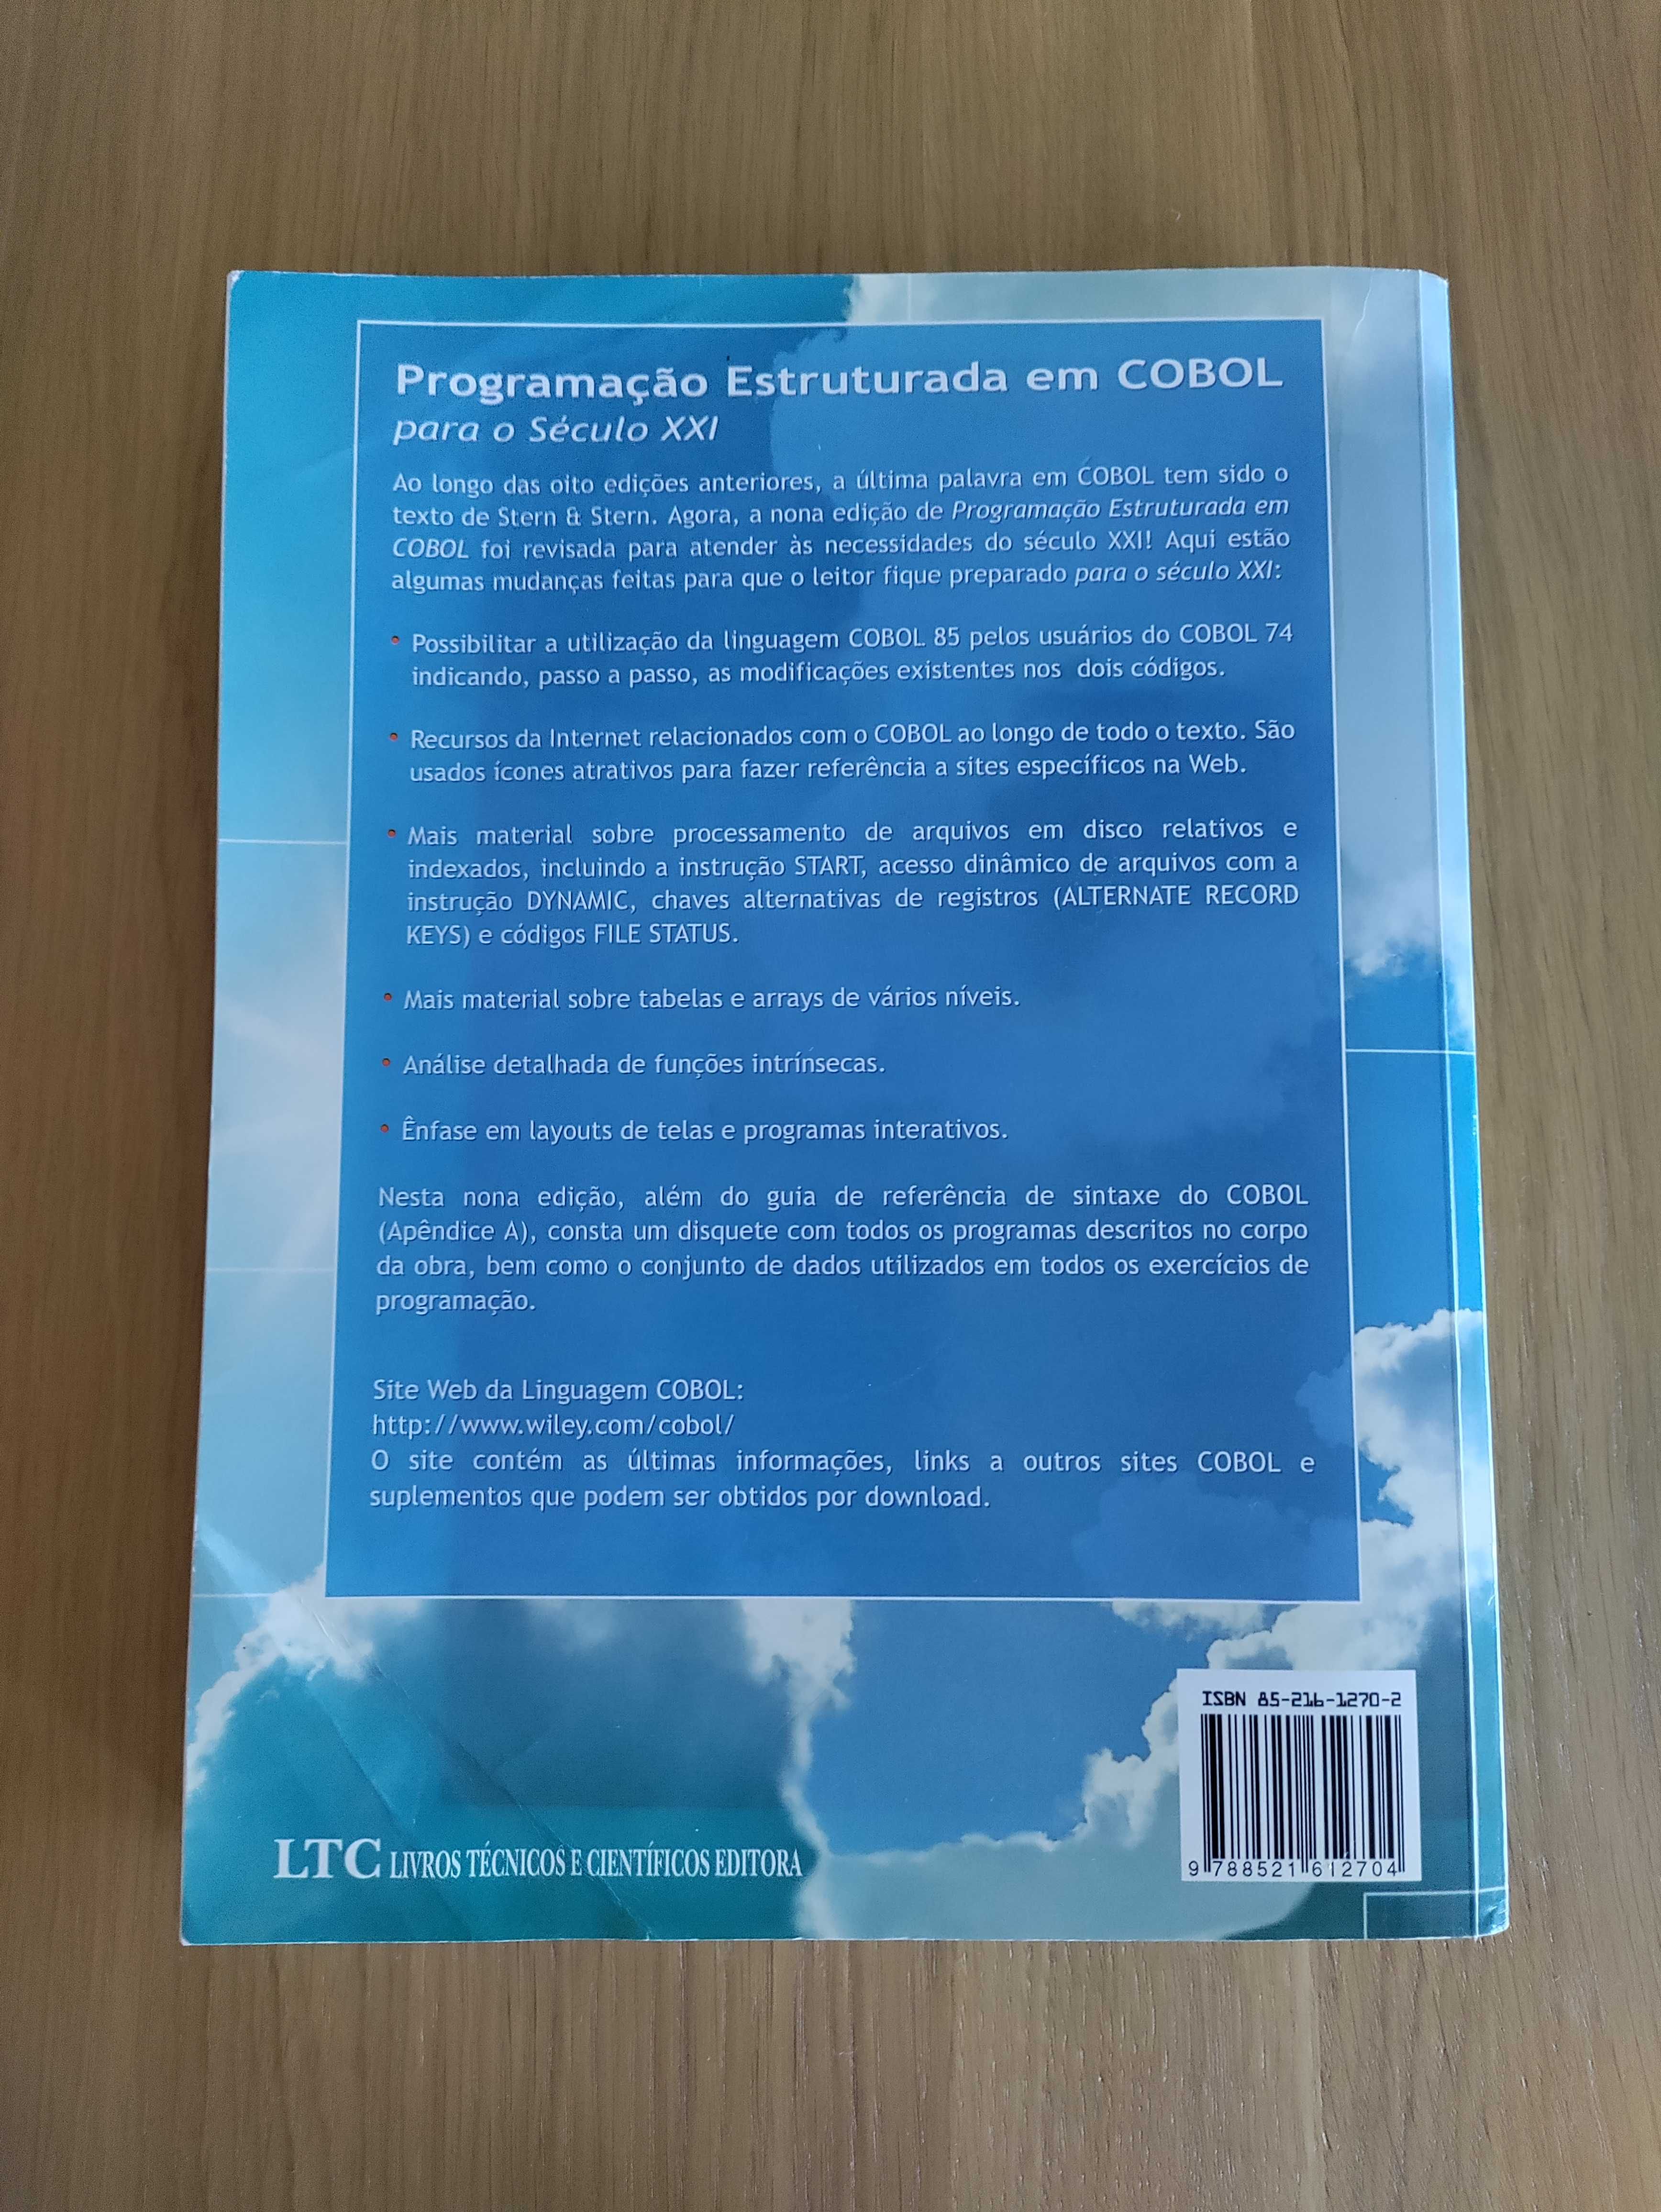 Livro "Programação Estruturada em COBOL" - Stern and Stern